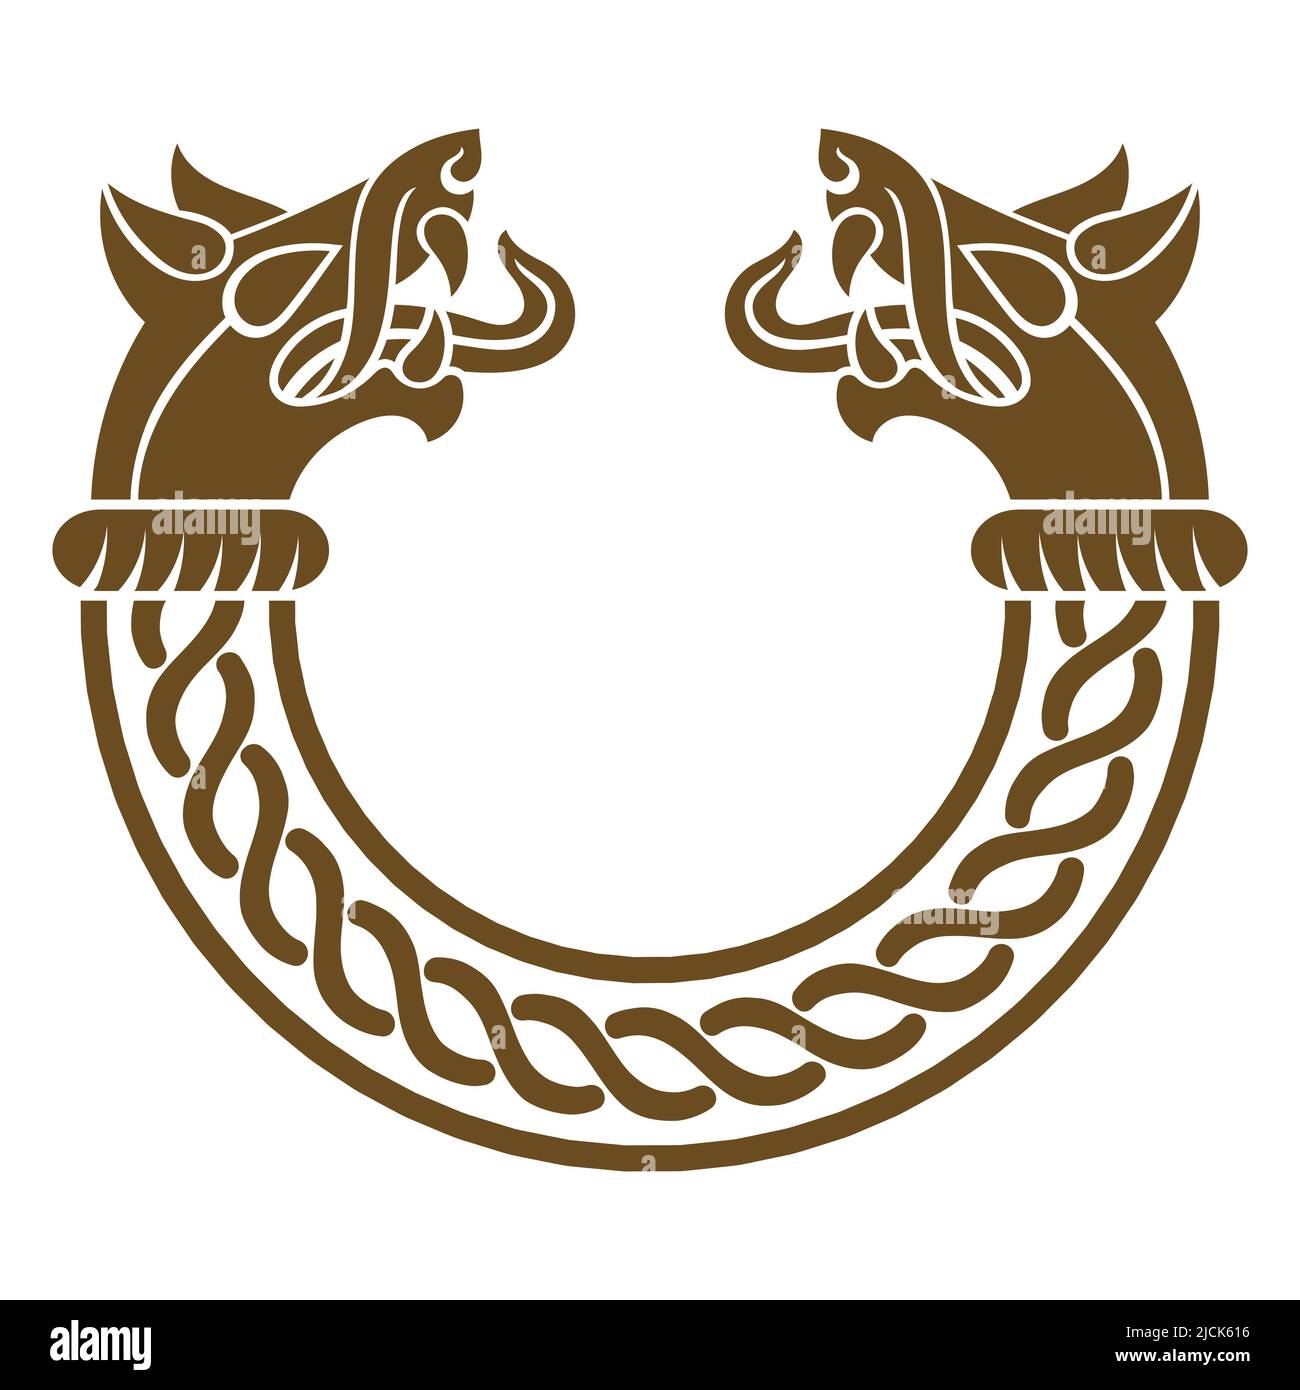 Design in stile Old Norse. Bracciale vichingo in bronzo con teste di lupo Illustrazione Vettoriale